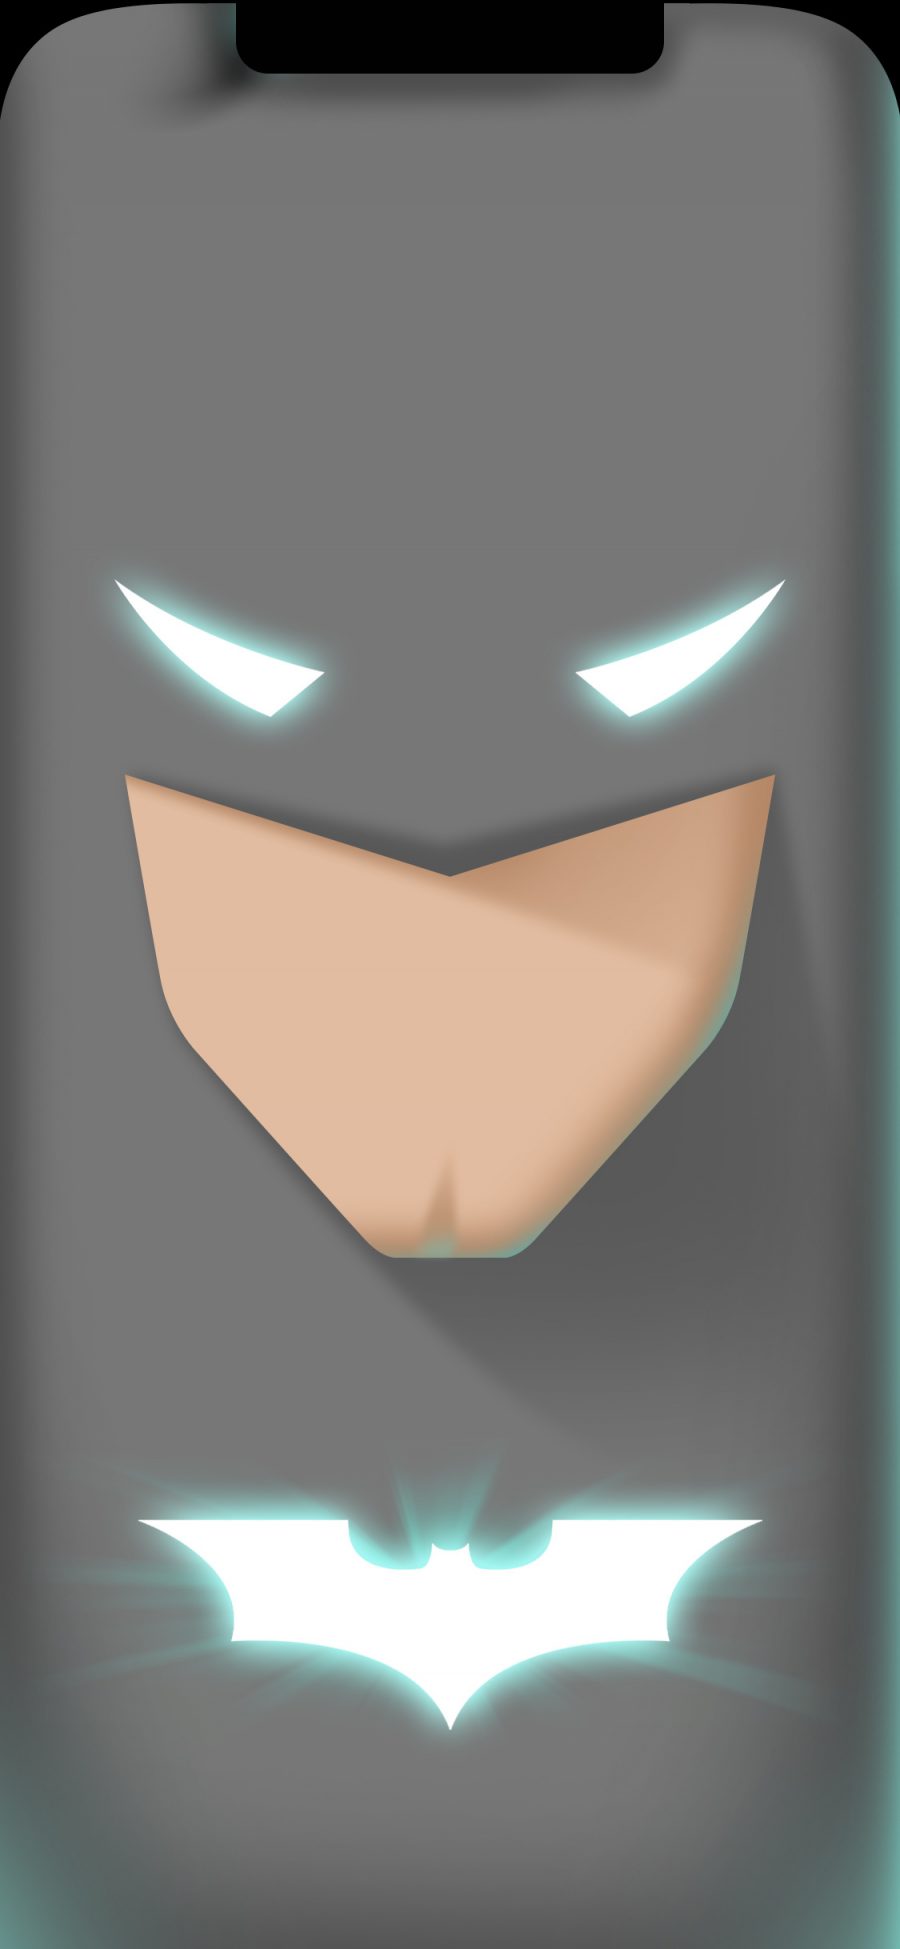 [2436×1125]蝙蝠侠 超级英雄 漫威 欧美 苹果手机动漫壁纸图片